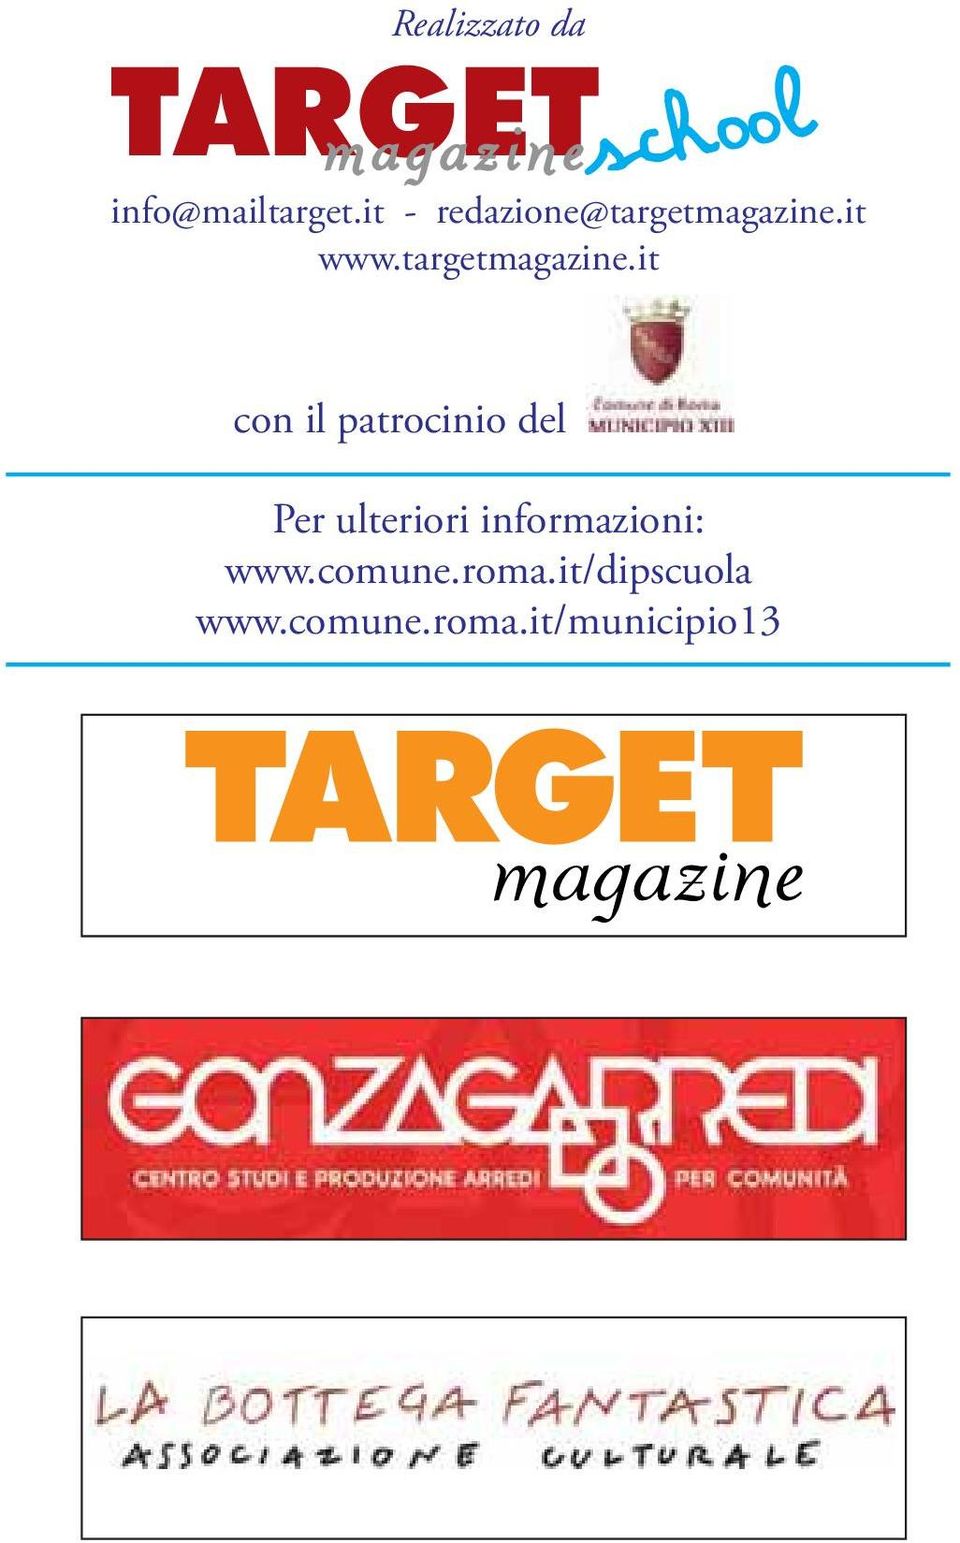 it www.targetmagazine.